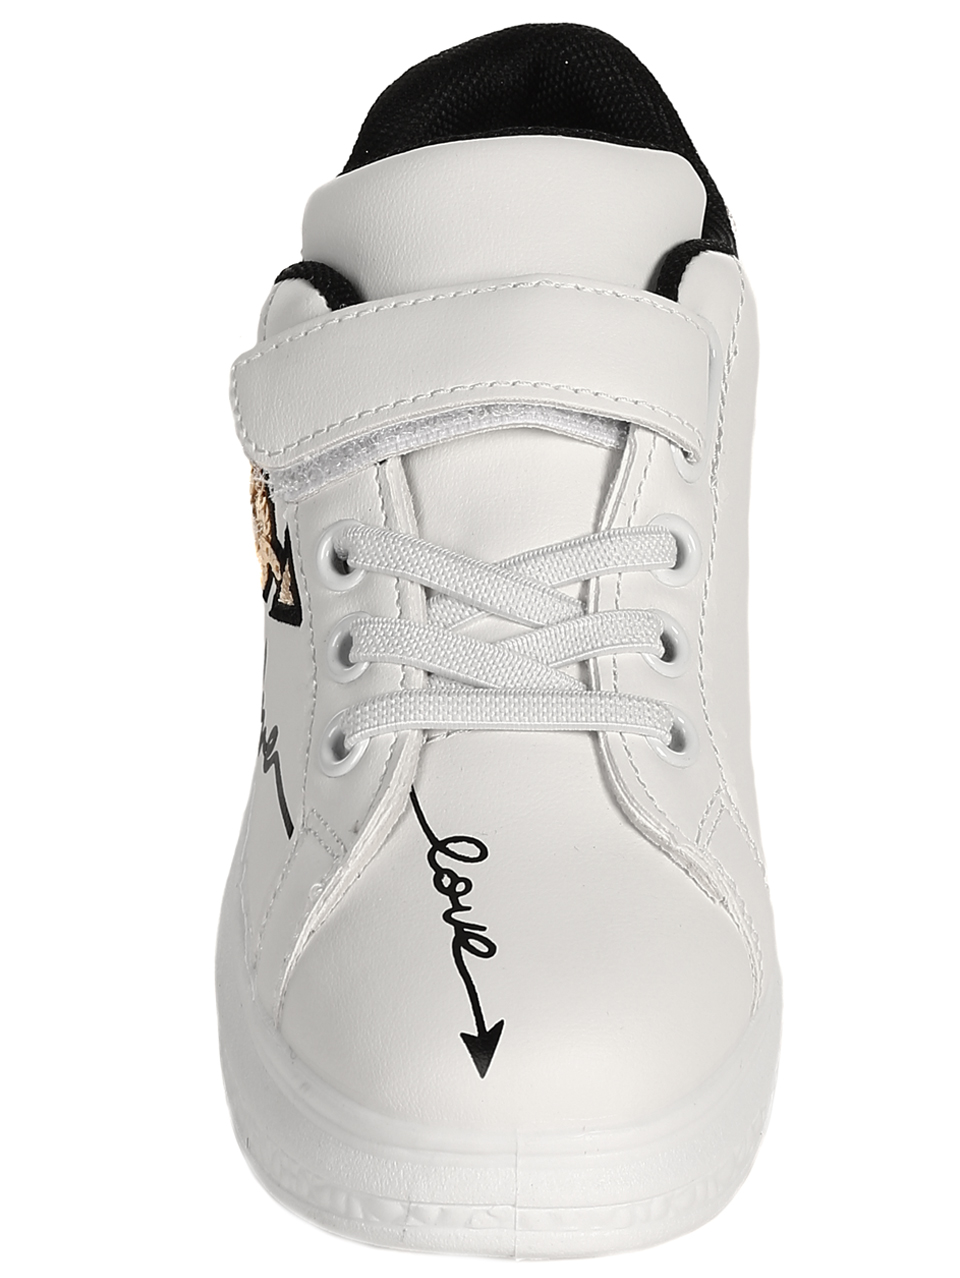 Ежедневни детски обувки в бяло и златисто 18U-22036 white/gold